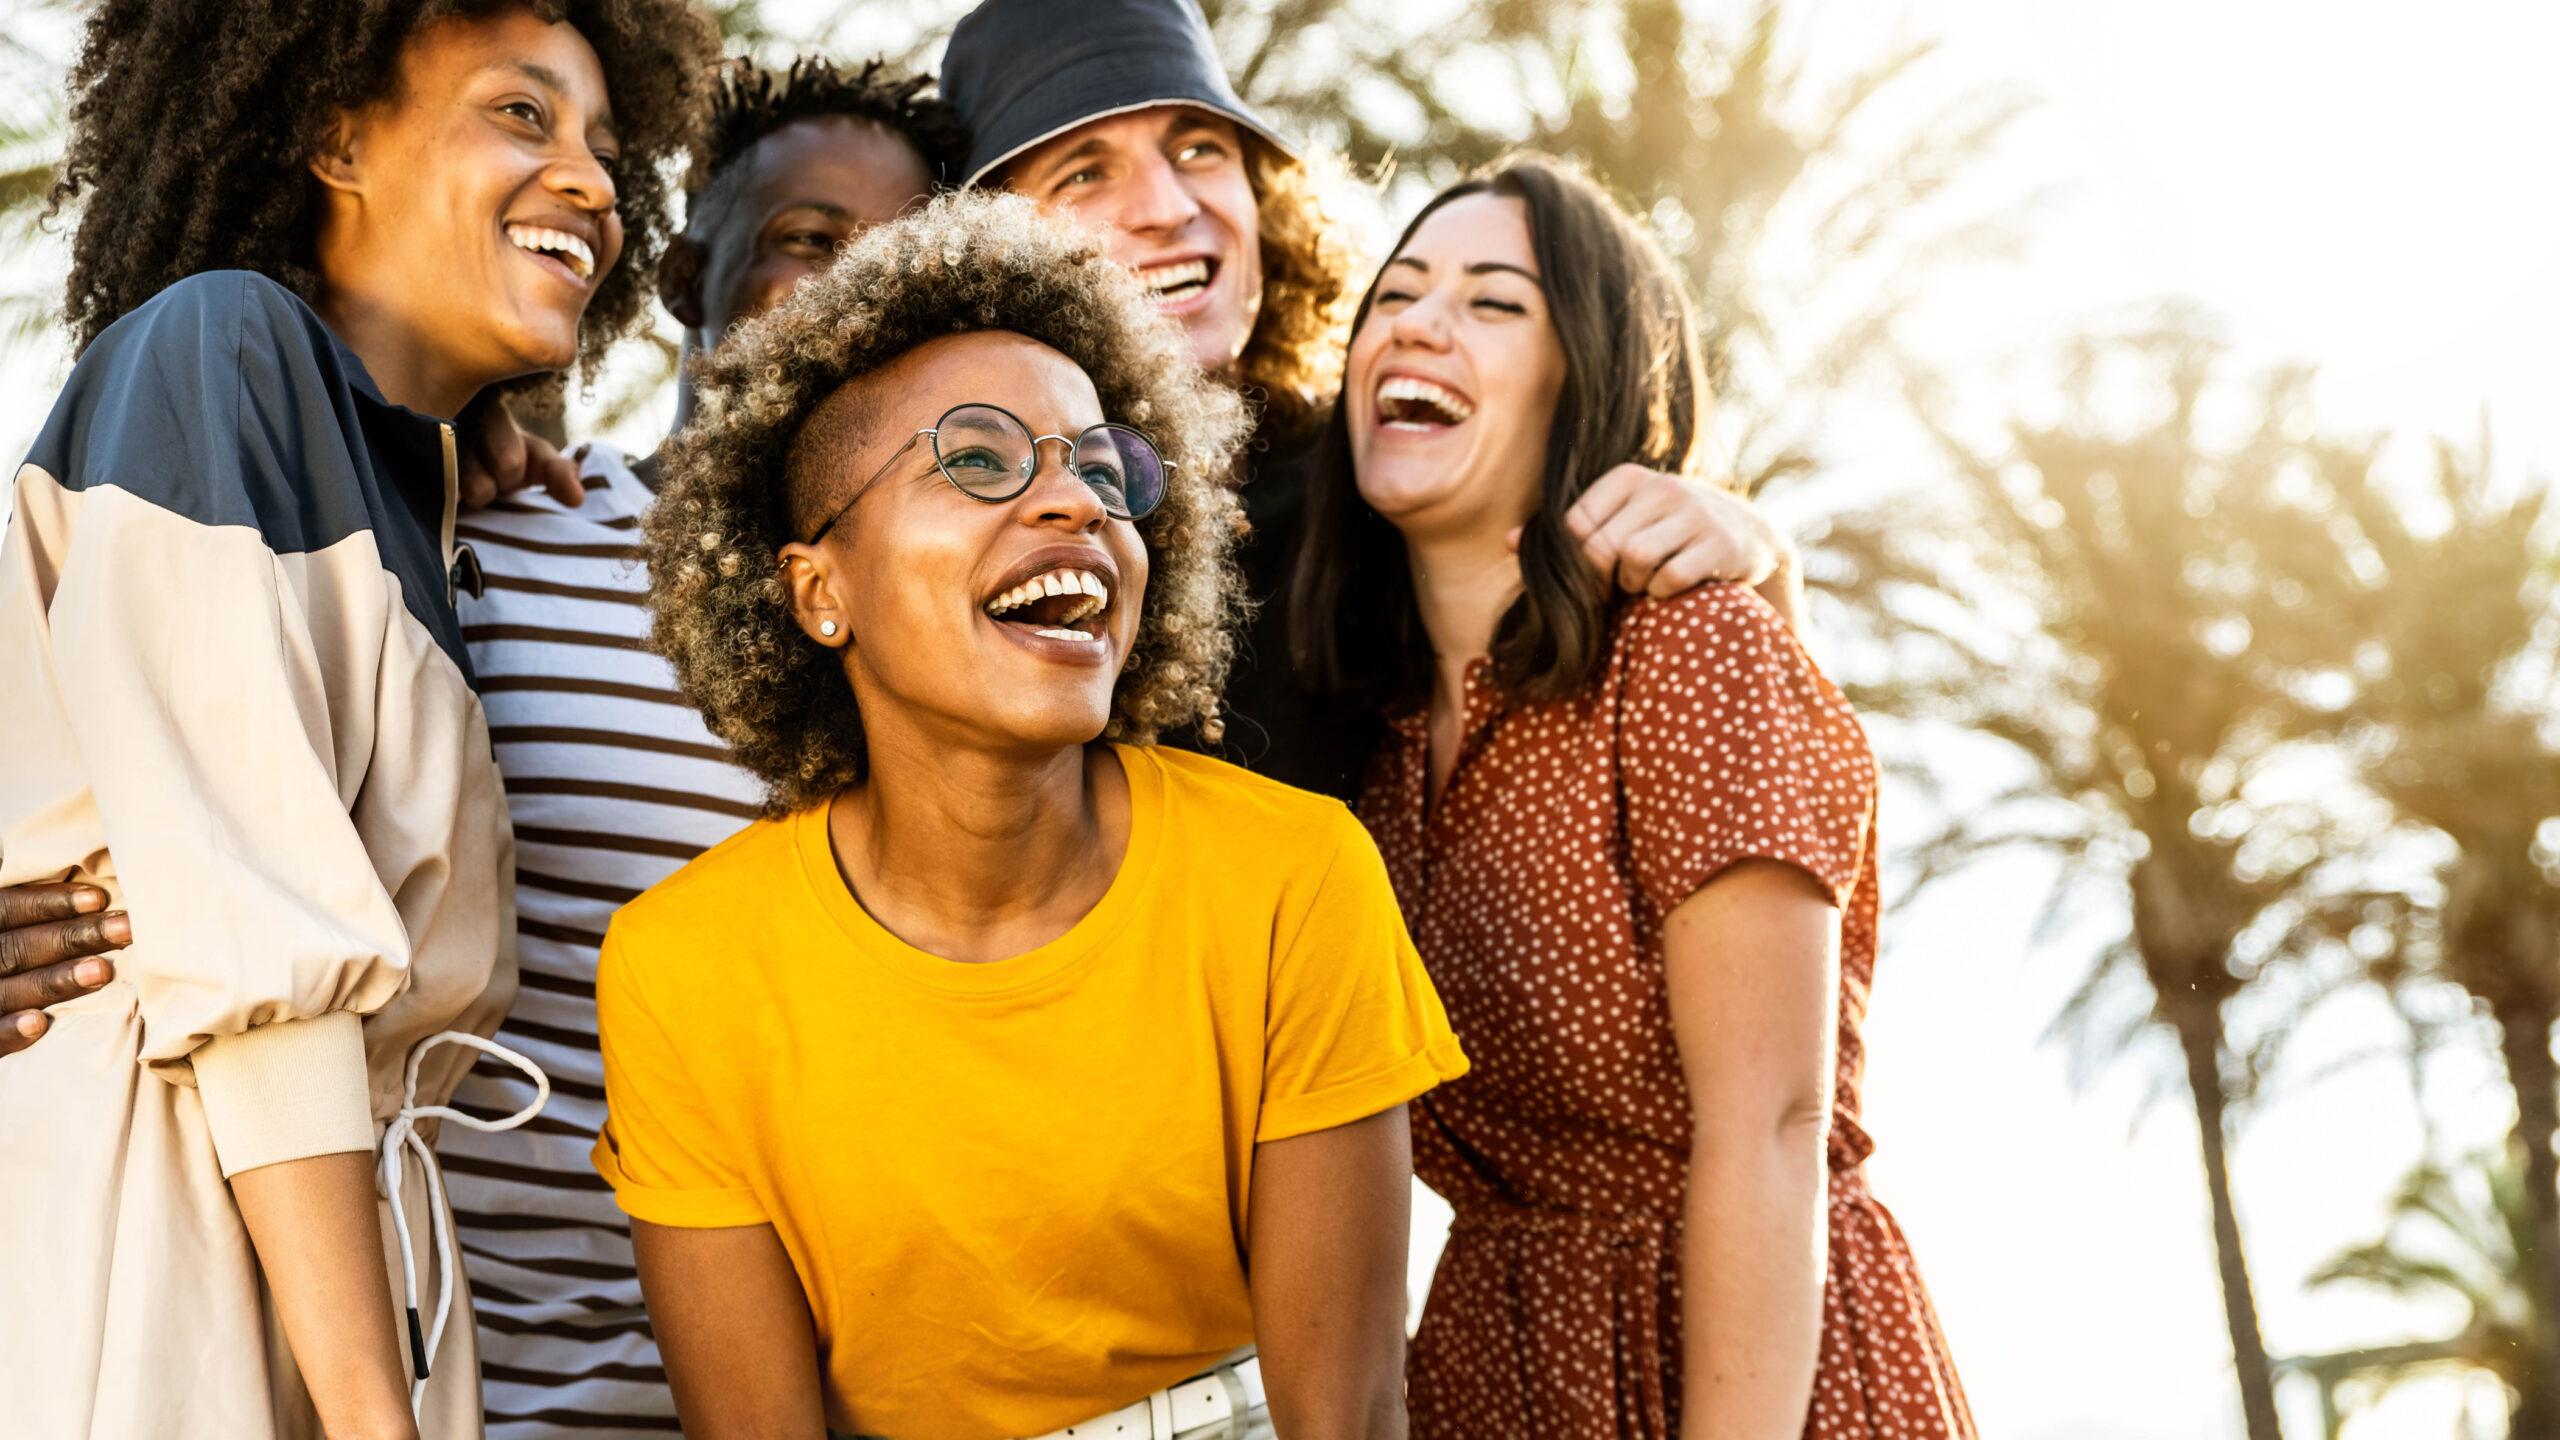 Jóvenes riéndose a carcajadas en un día soleado - Grupo alegre de mejores amigos disfrutando de las vacaciones de verano juntos